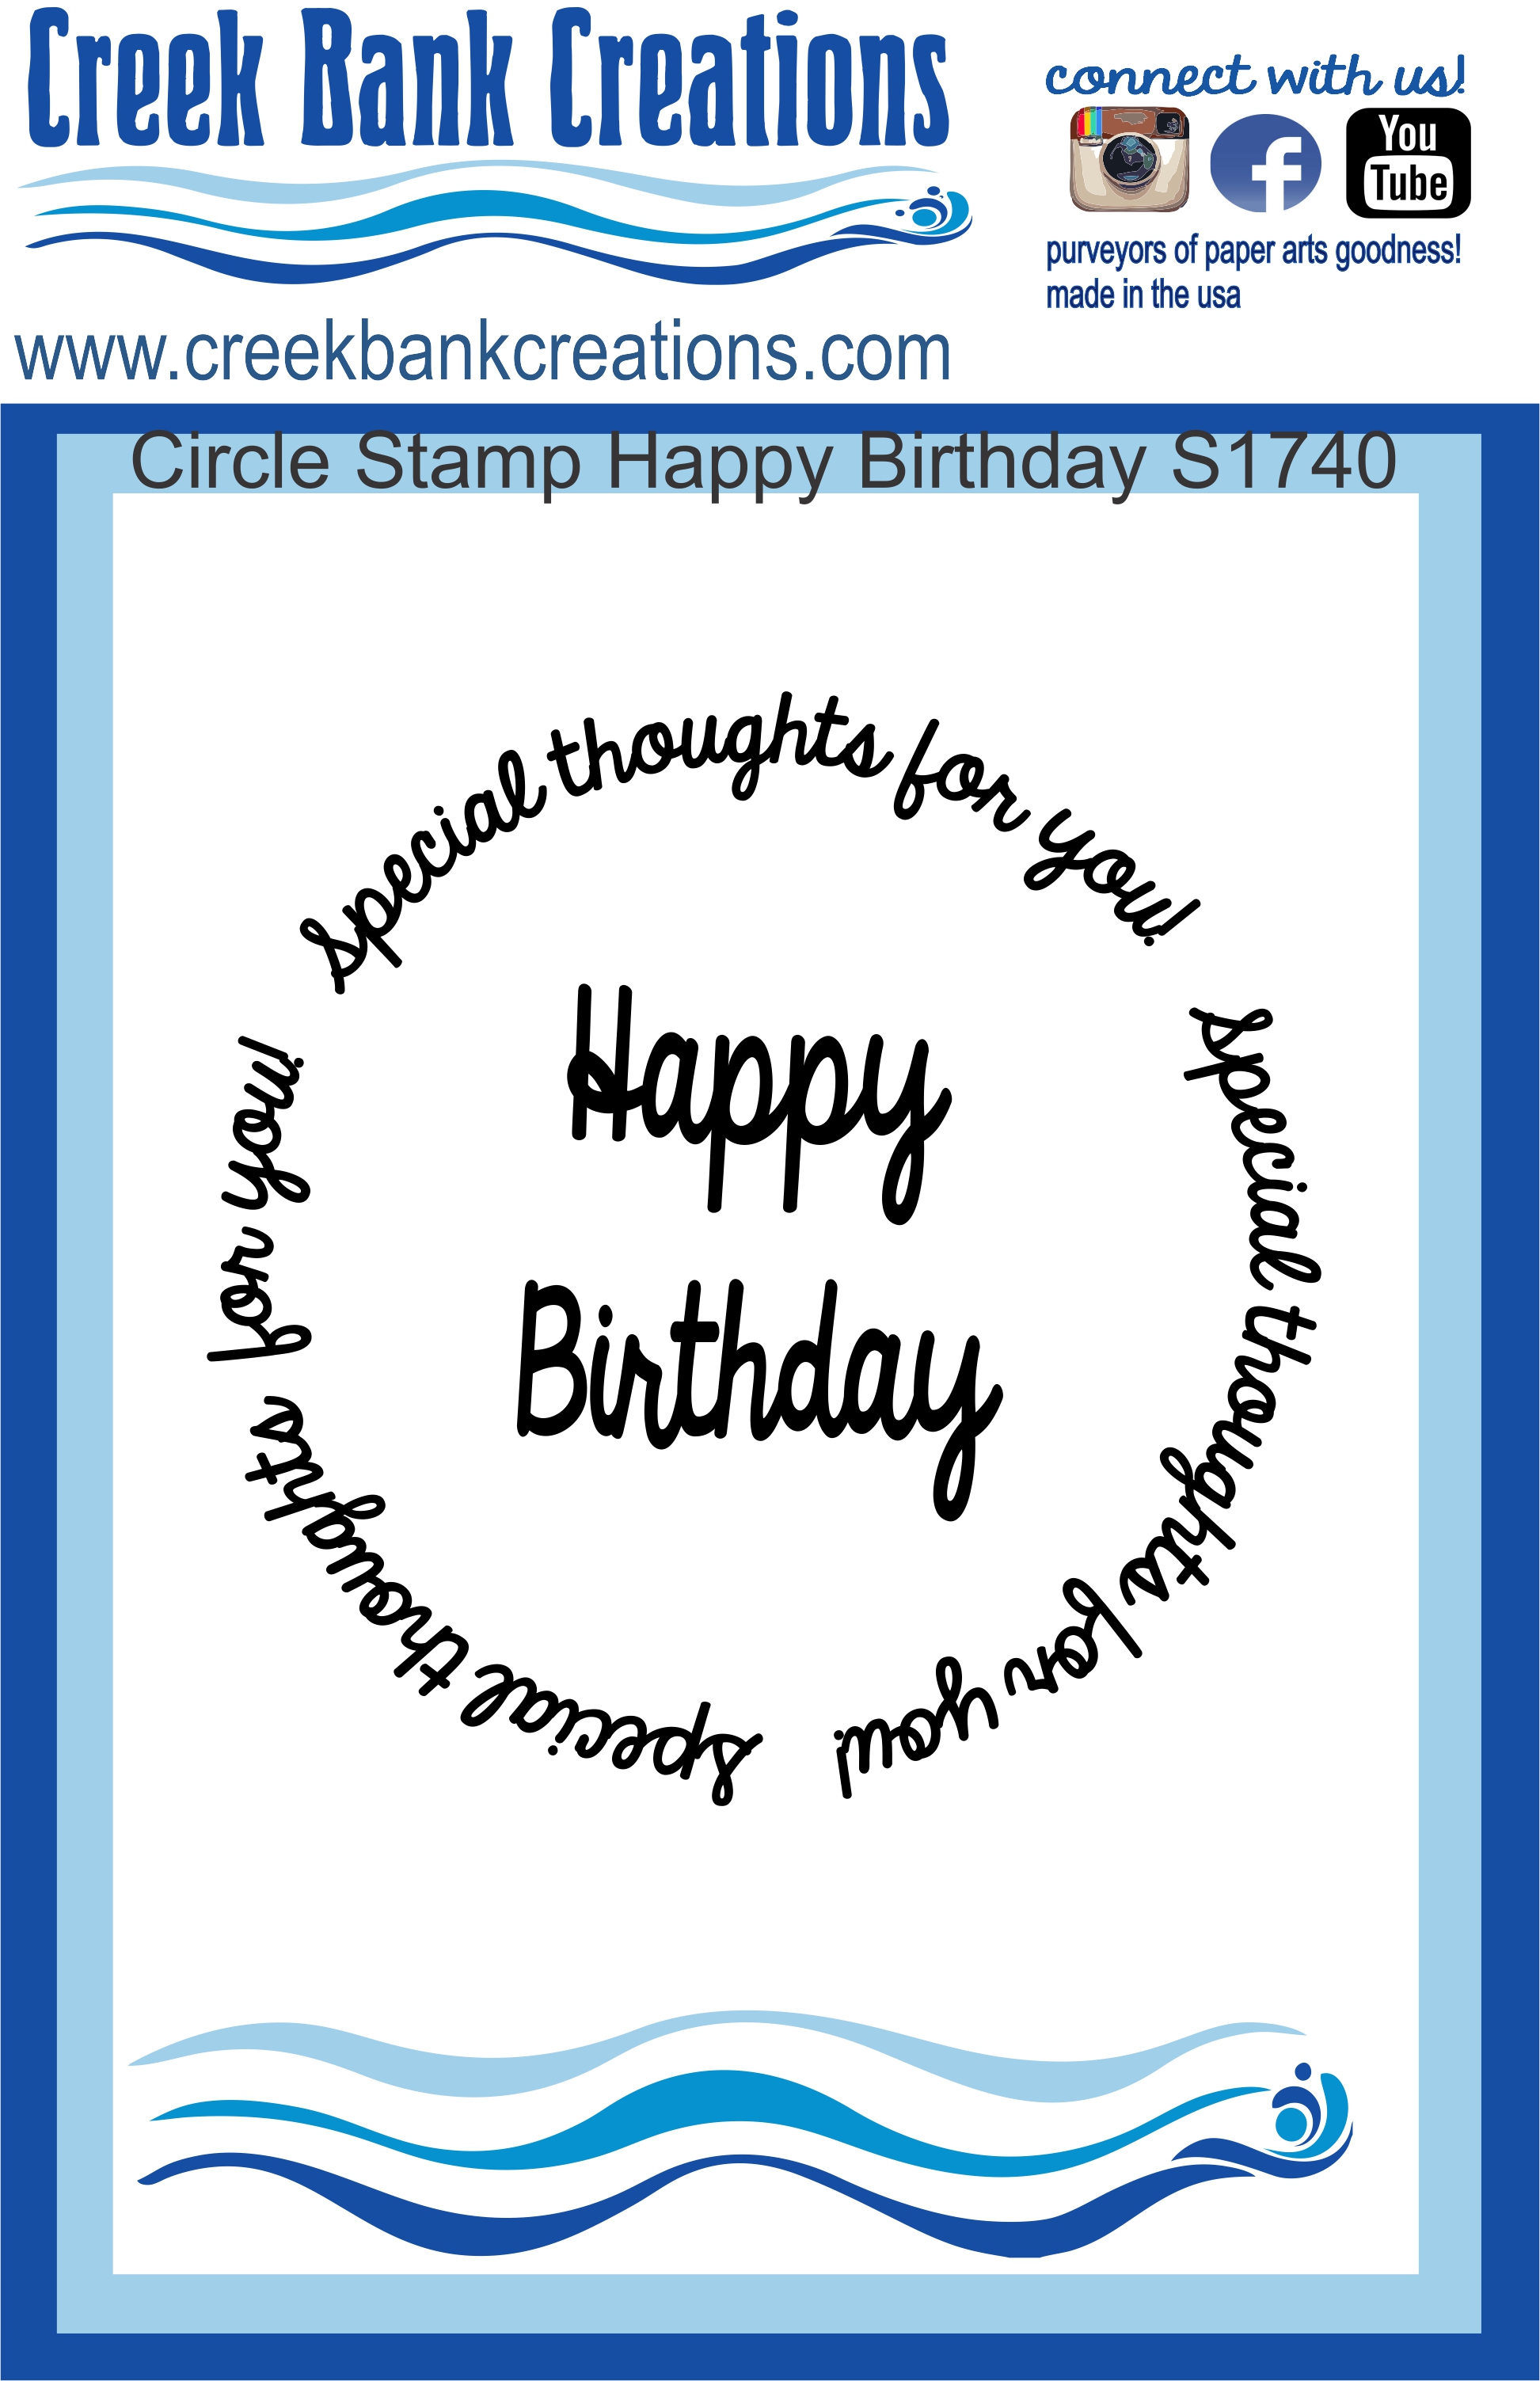 CBC Circle Stamp Happy Birthday Circle Stamp Happy Birthday S1740